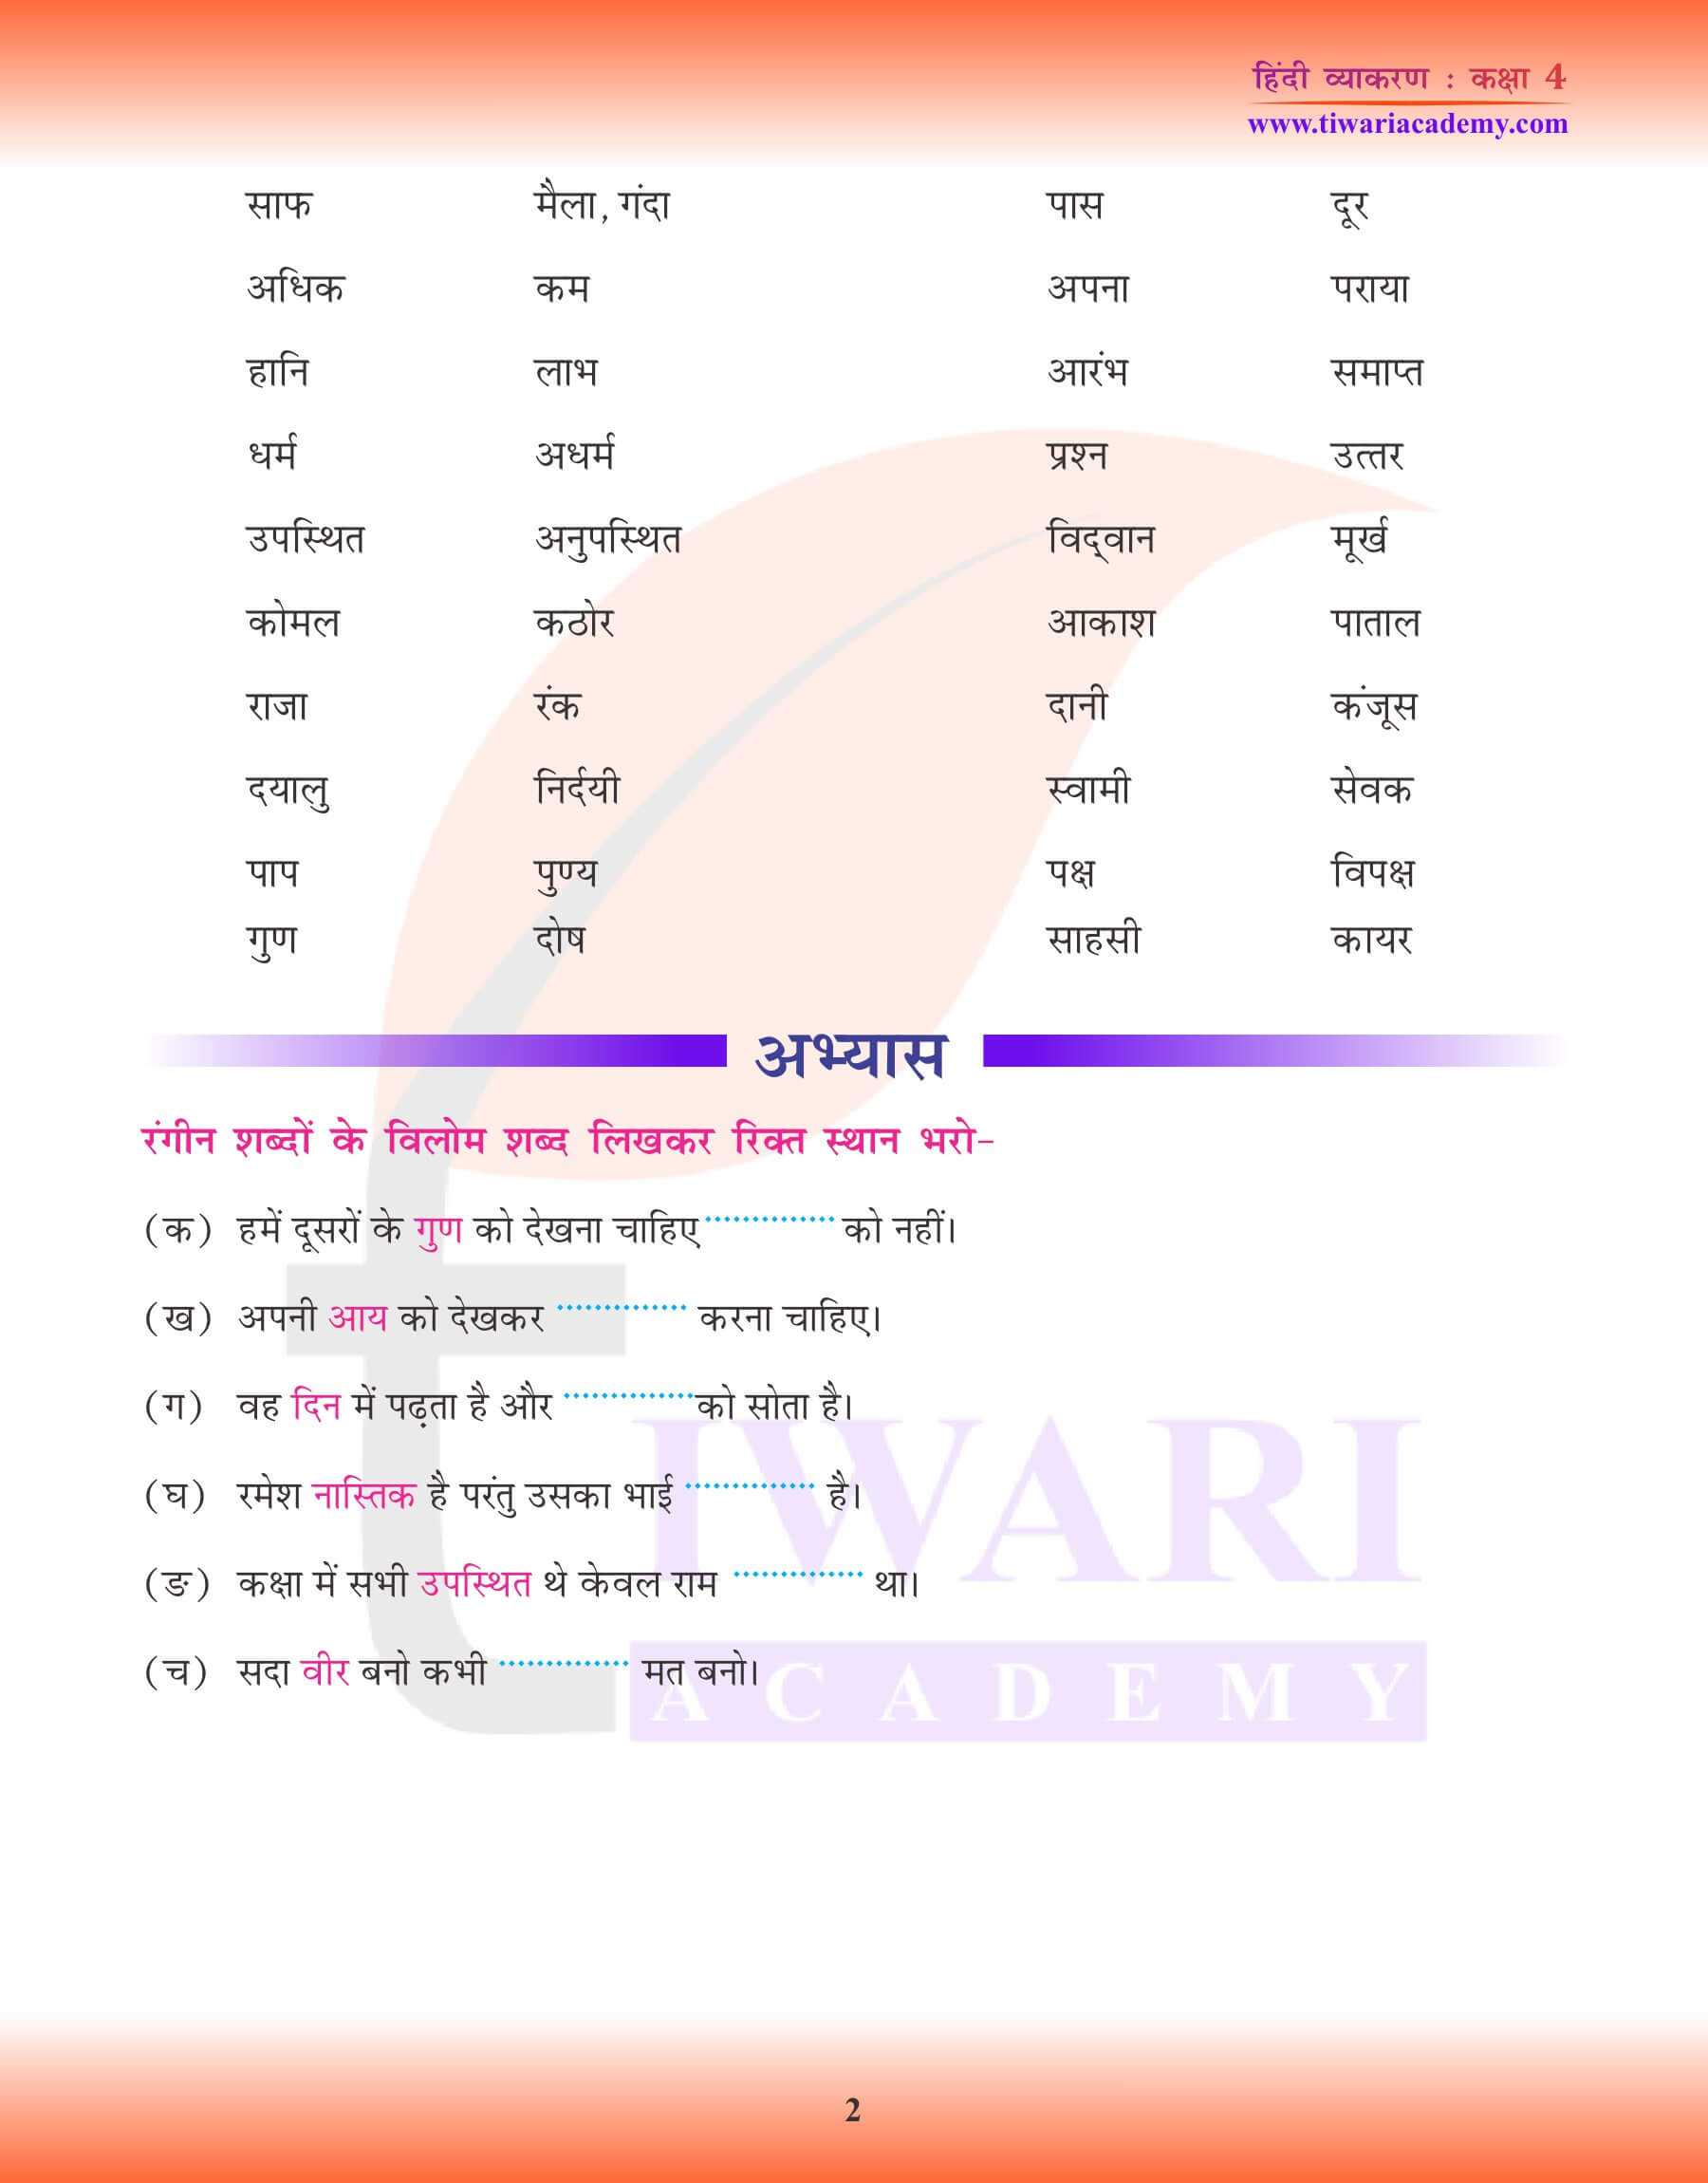 कक्षा 4 हिंदी व्याकरण में विलोम शब्द